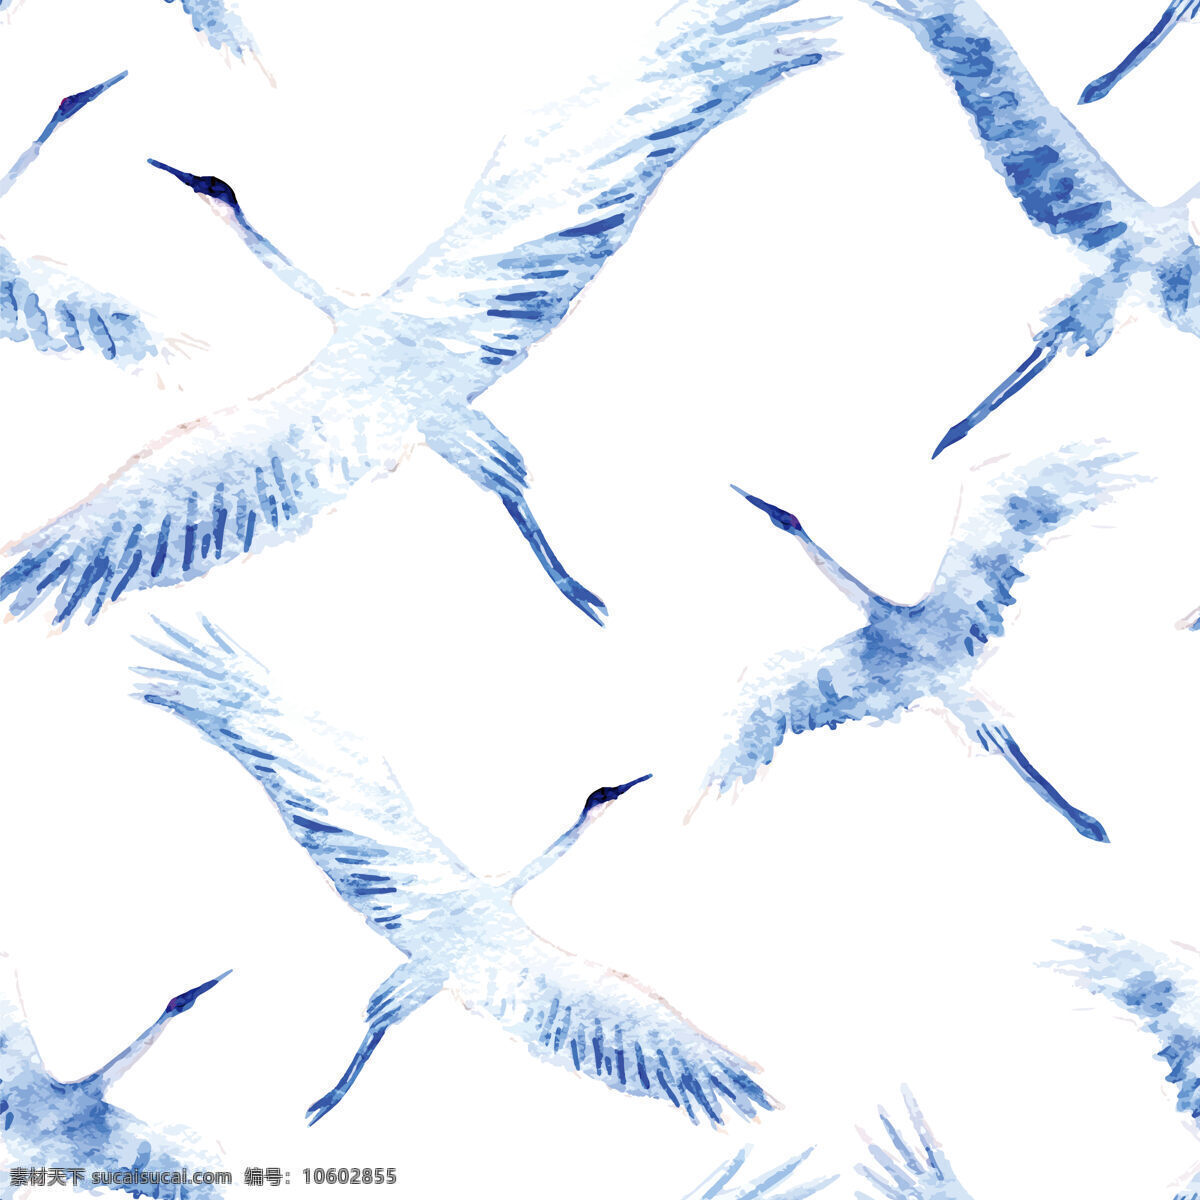 高雅 时尚 蓝 鹤壁 纸 图案 装饰设计 白底色 壁纸图案 展翅翱翔 蓝色翅膀